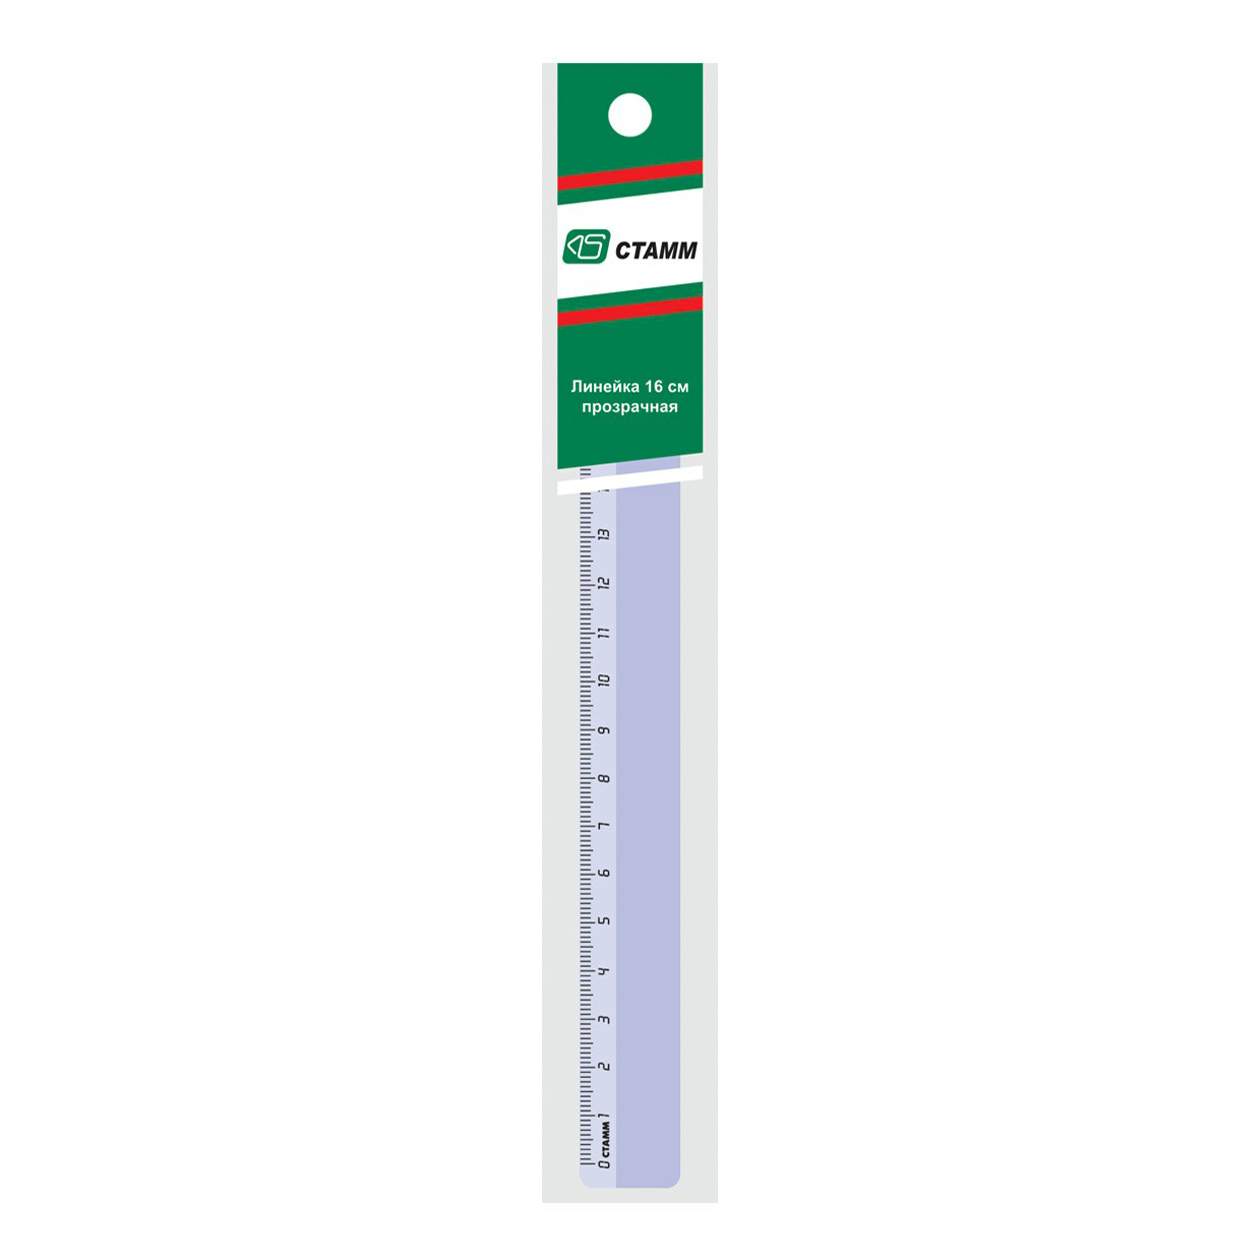 Термометр из бумаги для школы шаблоны – Поделка термометр из бумаги с фото инструкцией